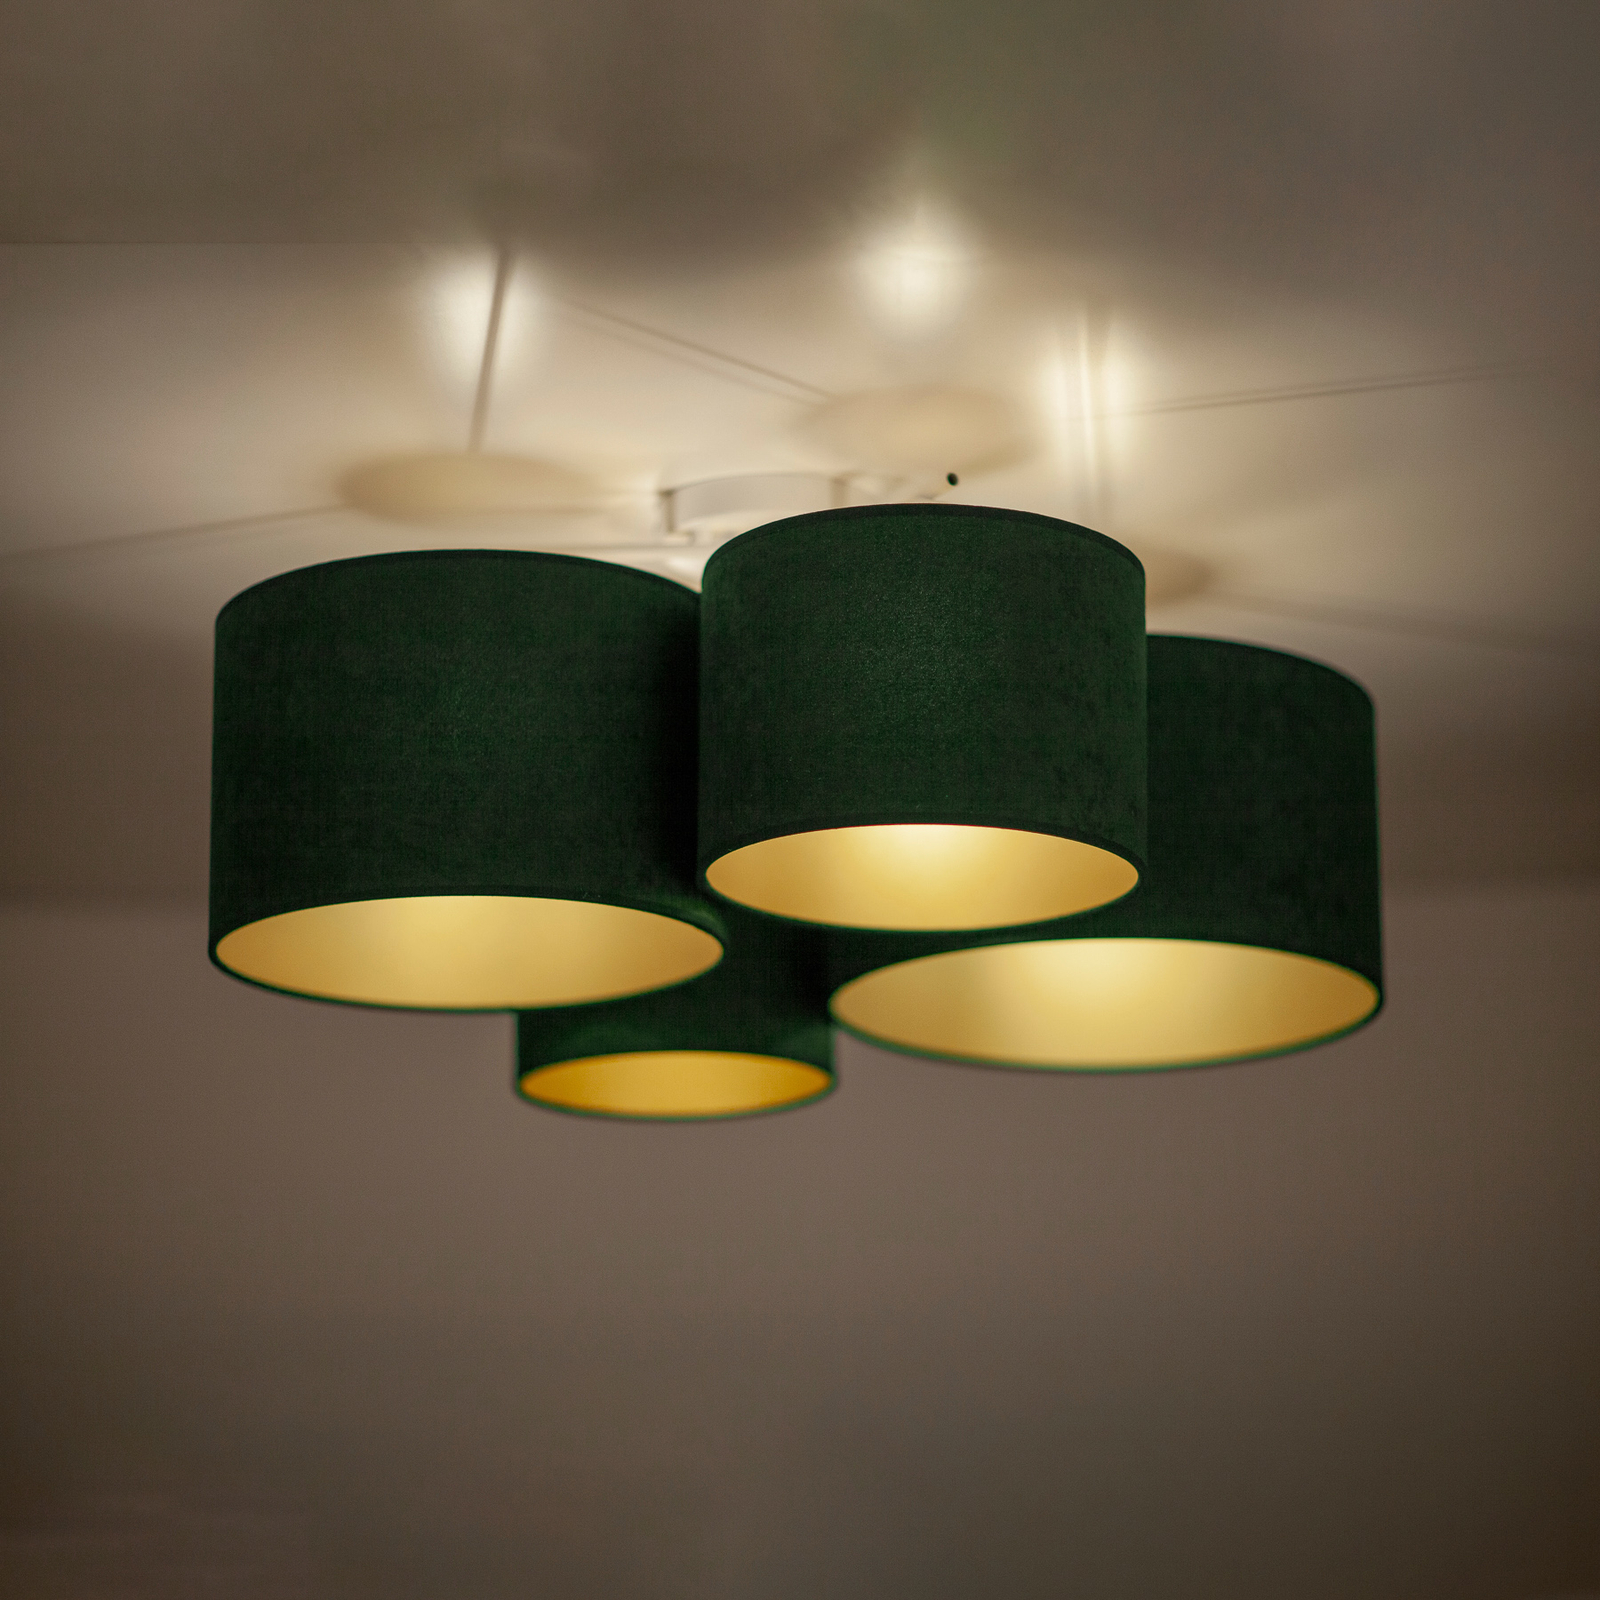 Euluna Lodge taklampa, 4 lampor, grön/guld